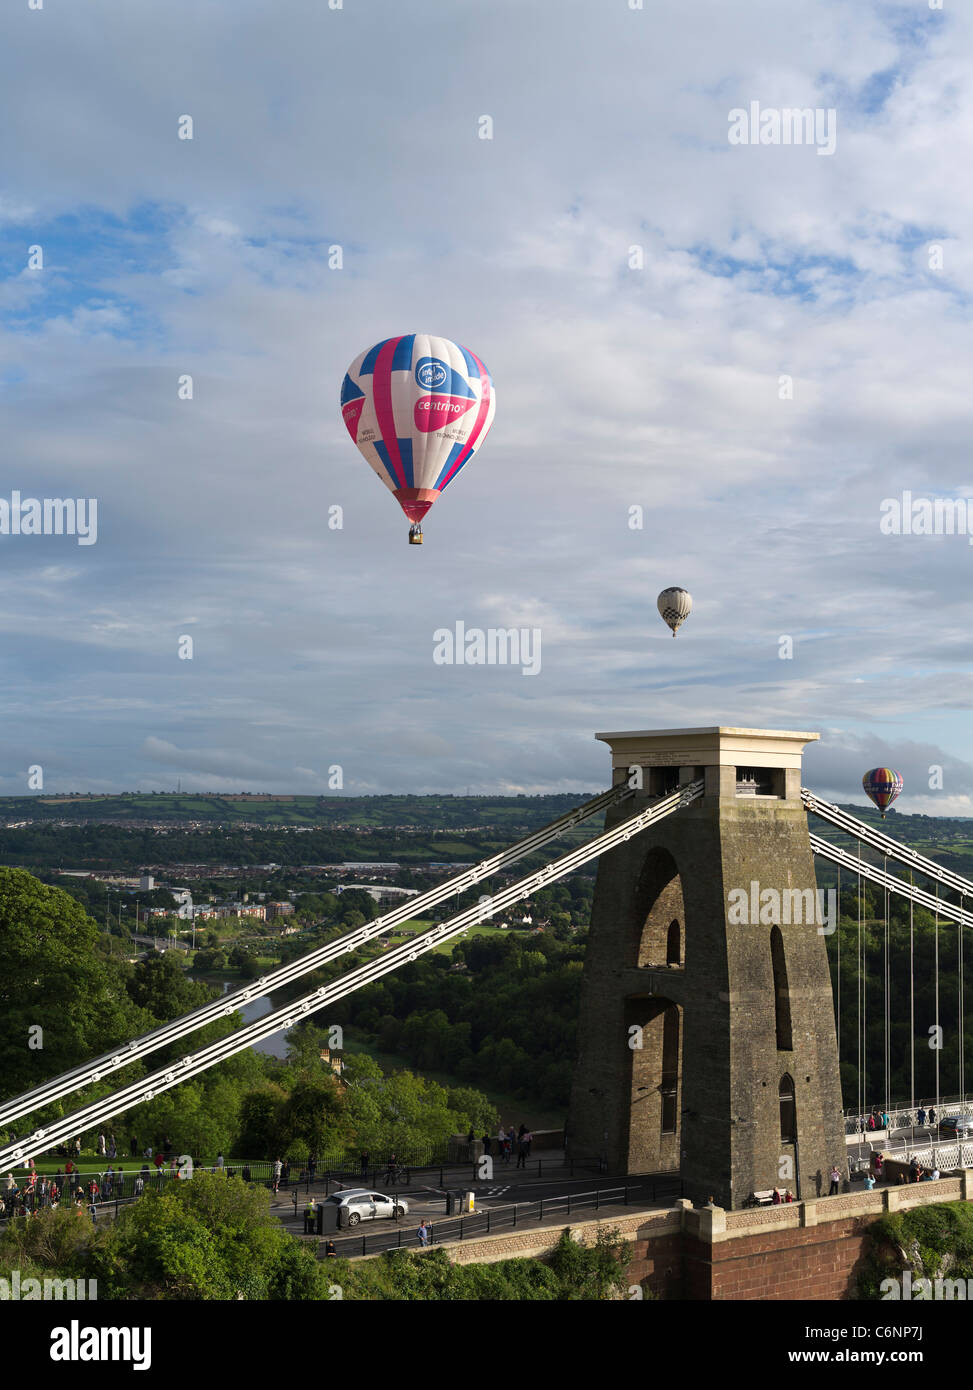 dh Balloon festival international CLIFTON BRISTOL montgolfières voler Au-dessus du pont suspendu royaume-uni fiesta Angleterre Royaume-Uni Banque D'Images